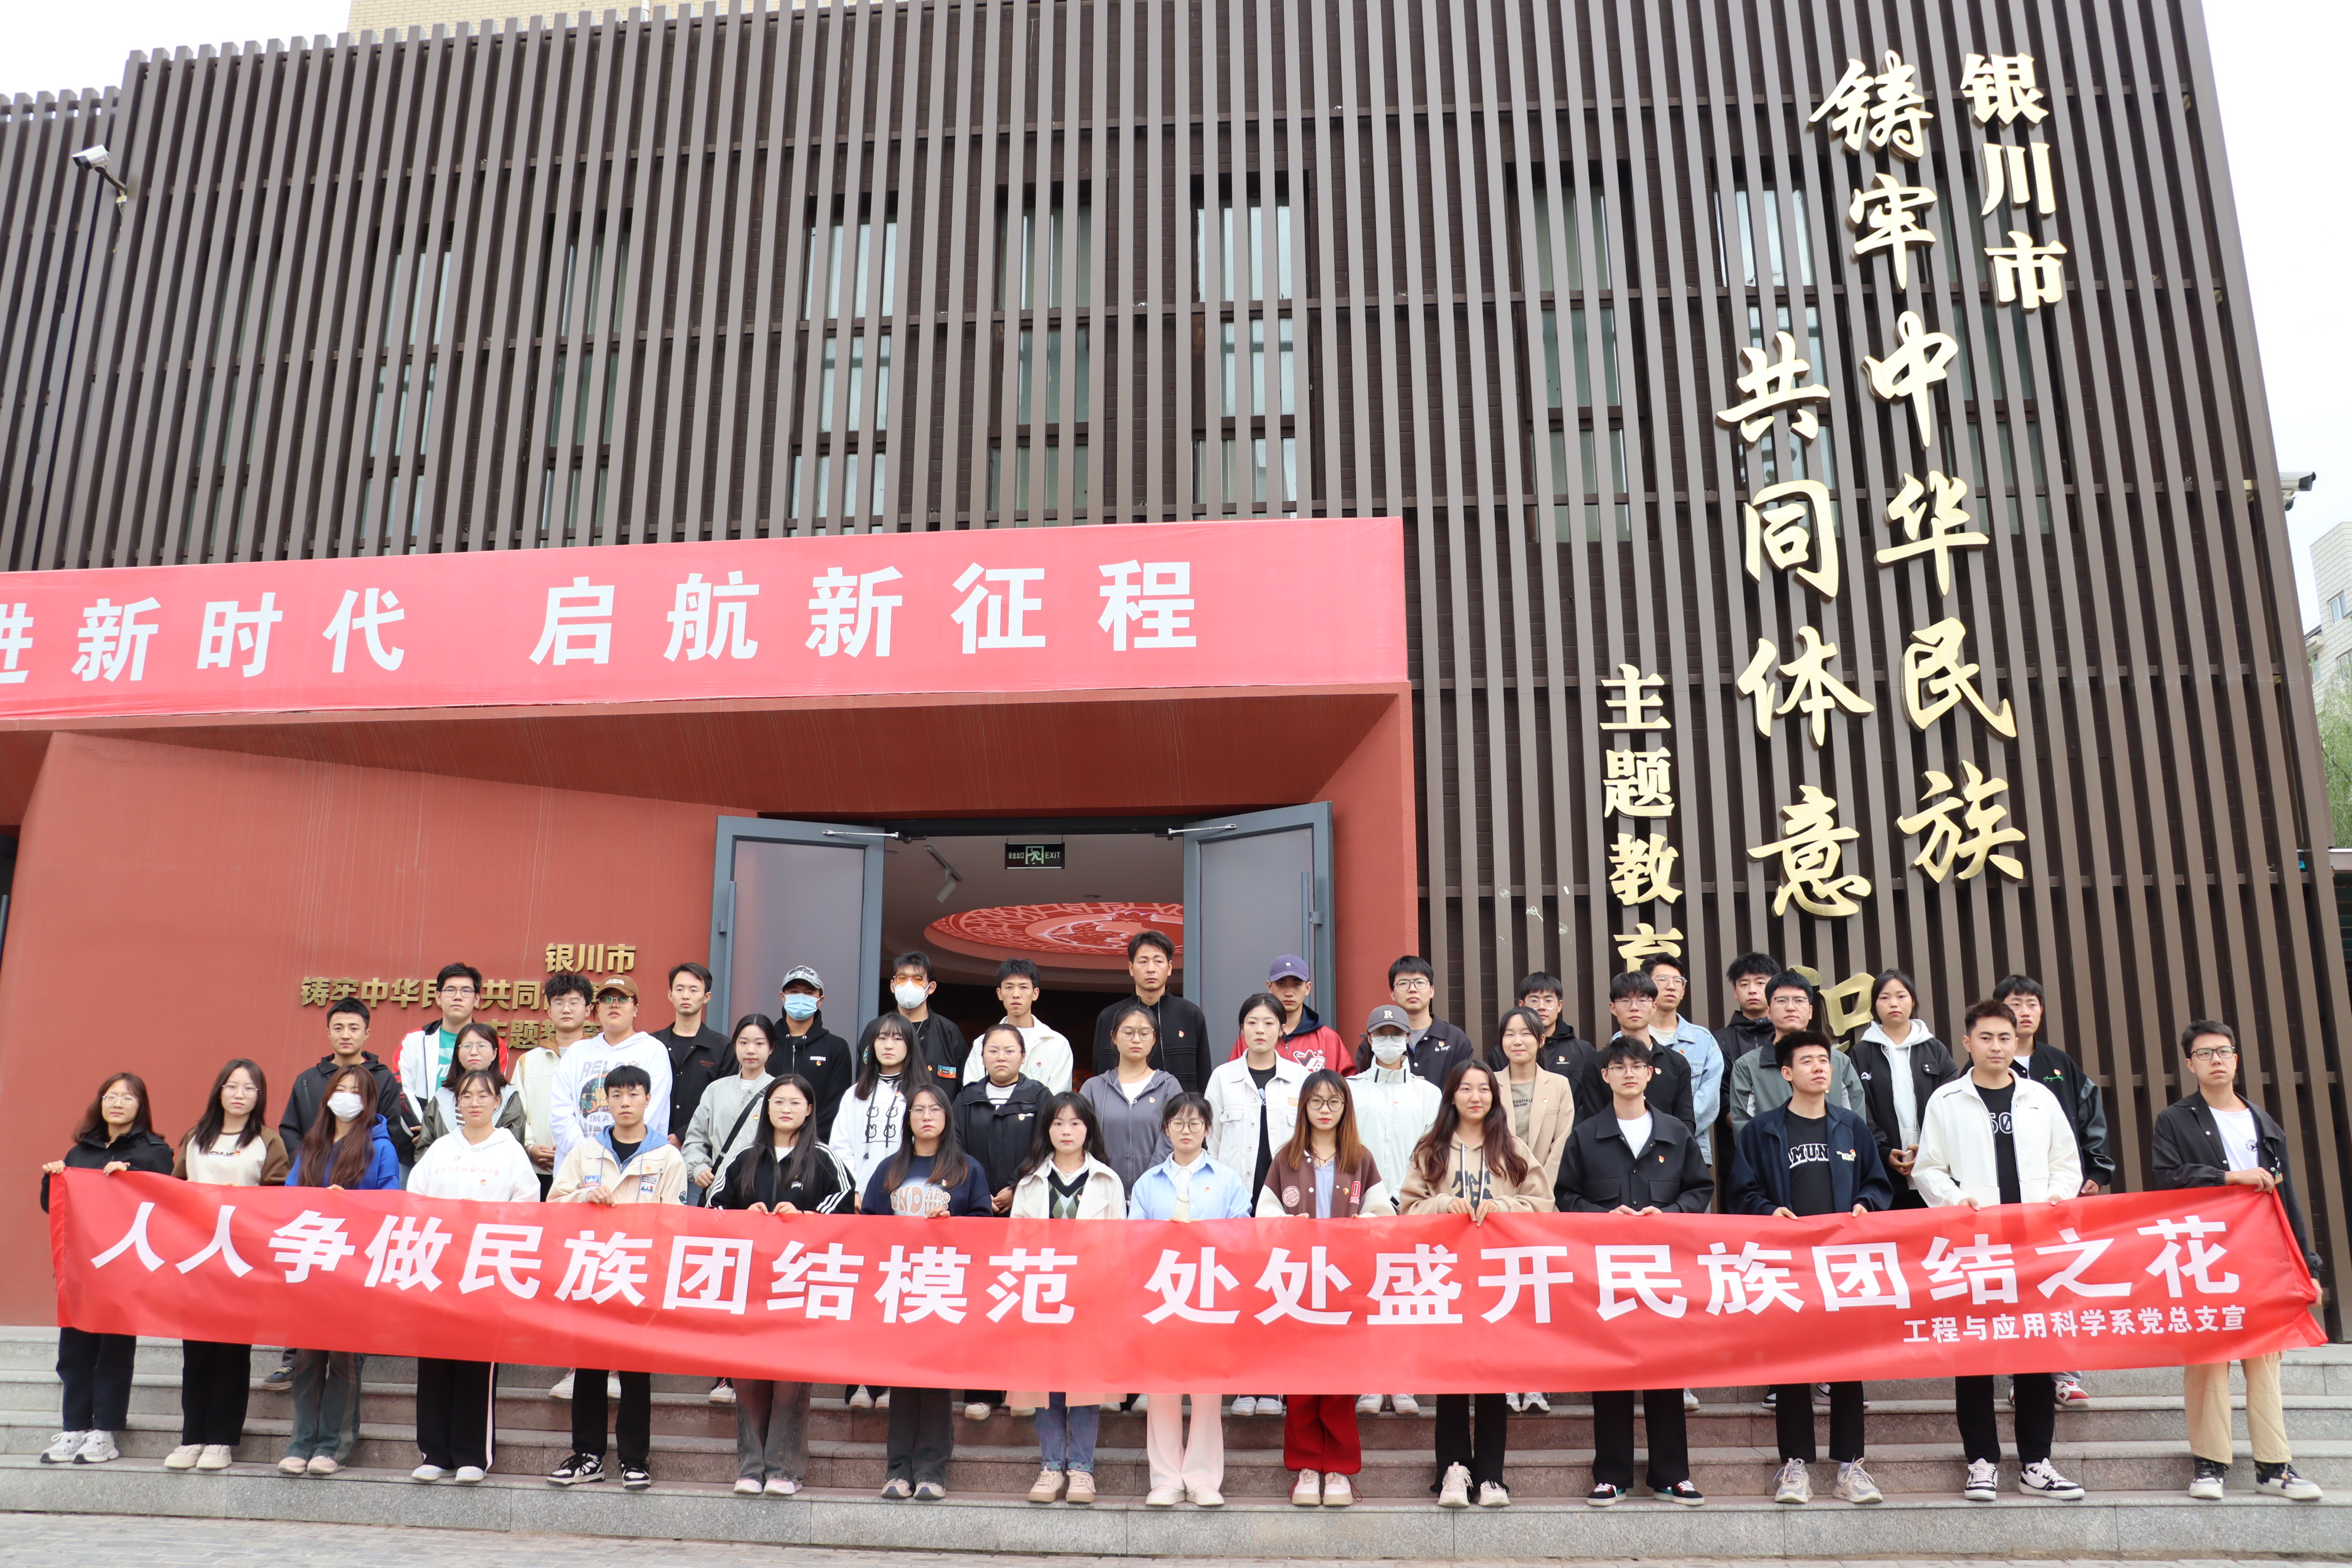 工程与应用科学系组织学生党员参观“铸牢中华民族共同体意识主题教育馆”